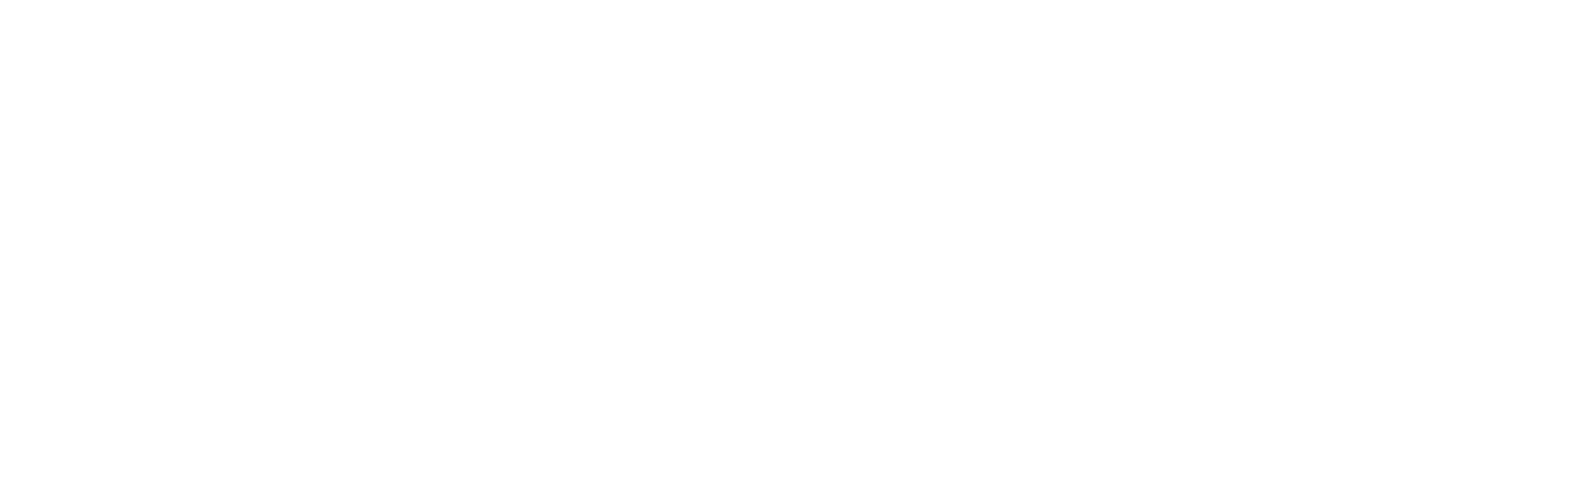 Mullen Automotive Logo groß für dunkle Hintergründe (transparentes PNG)